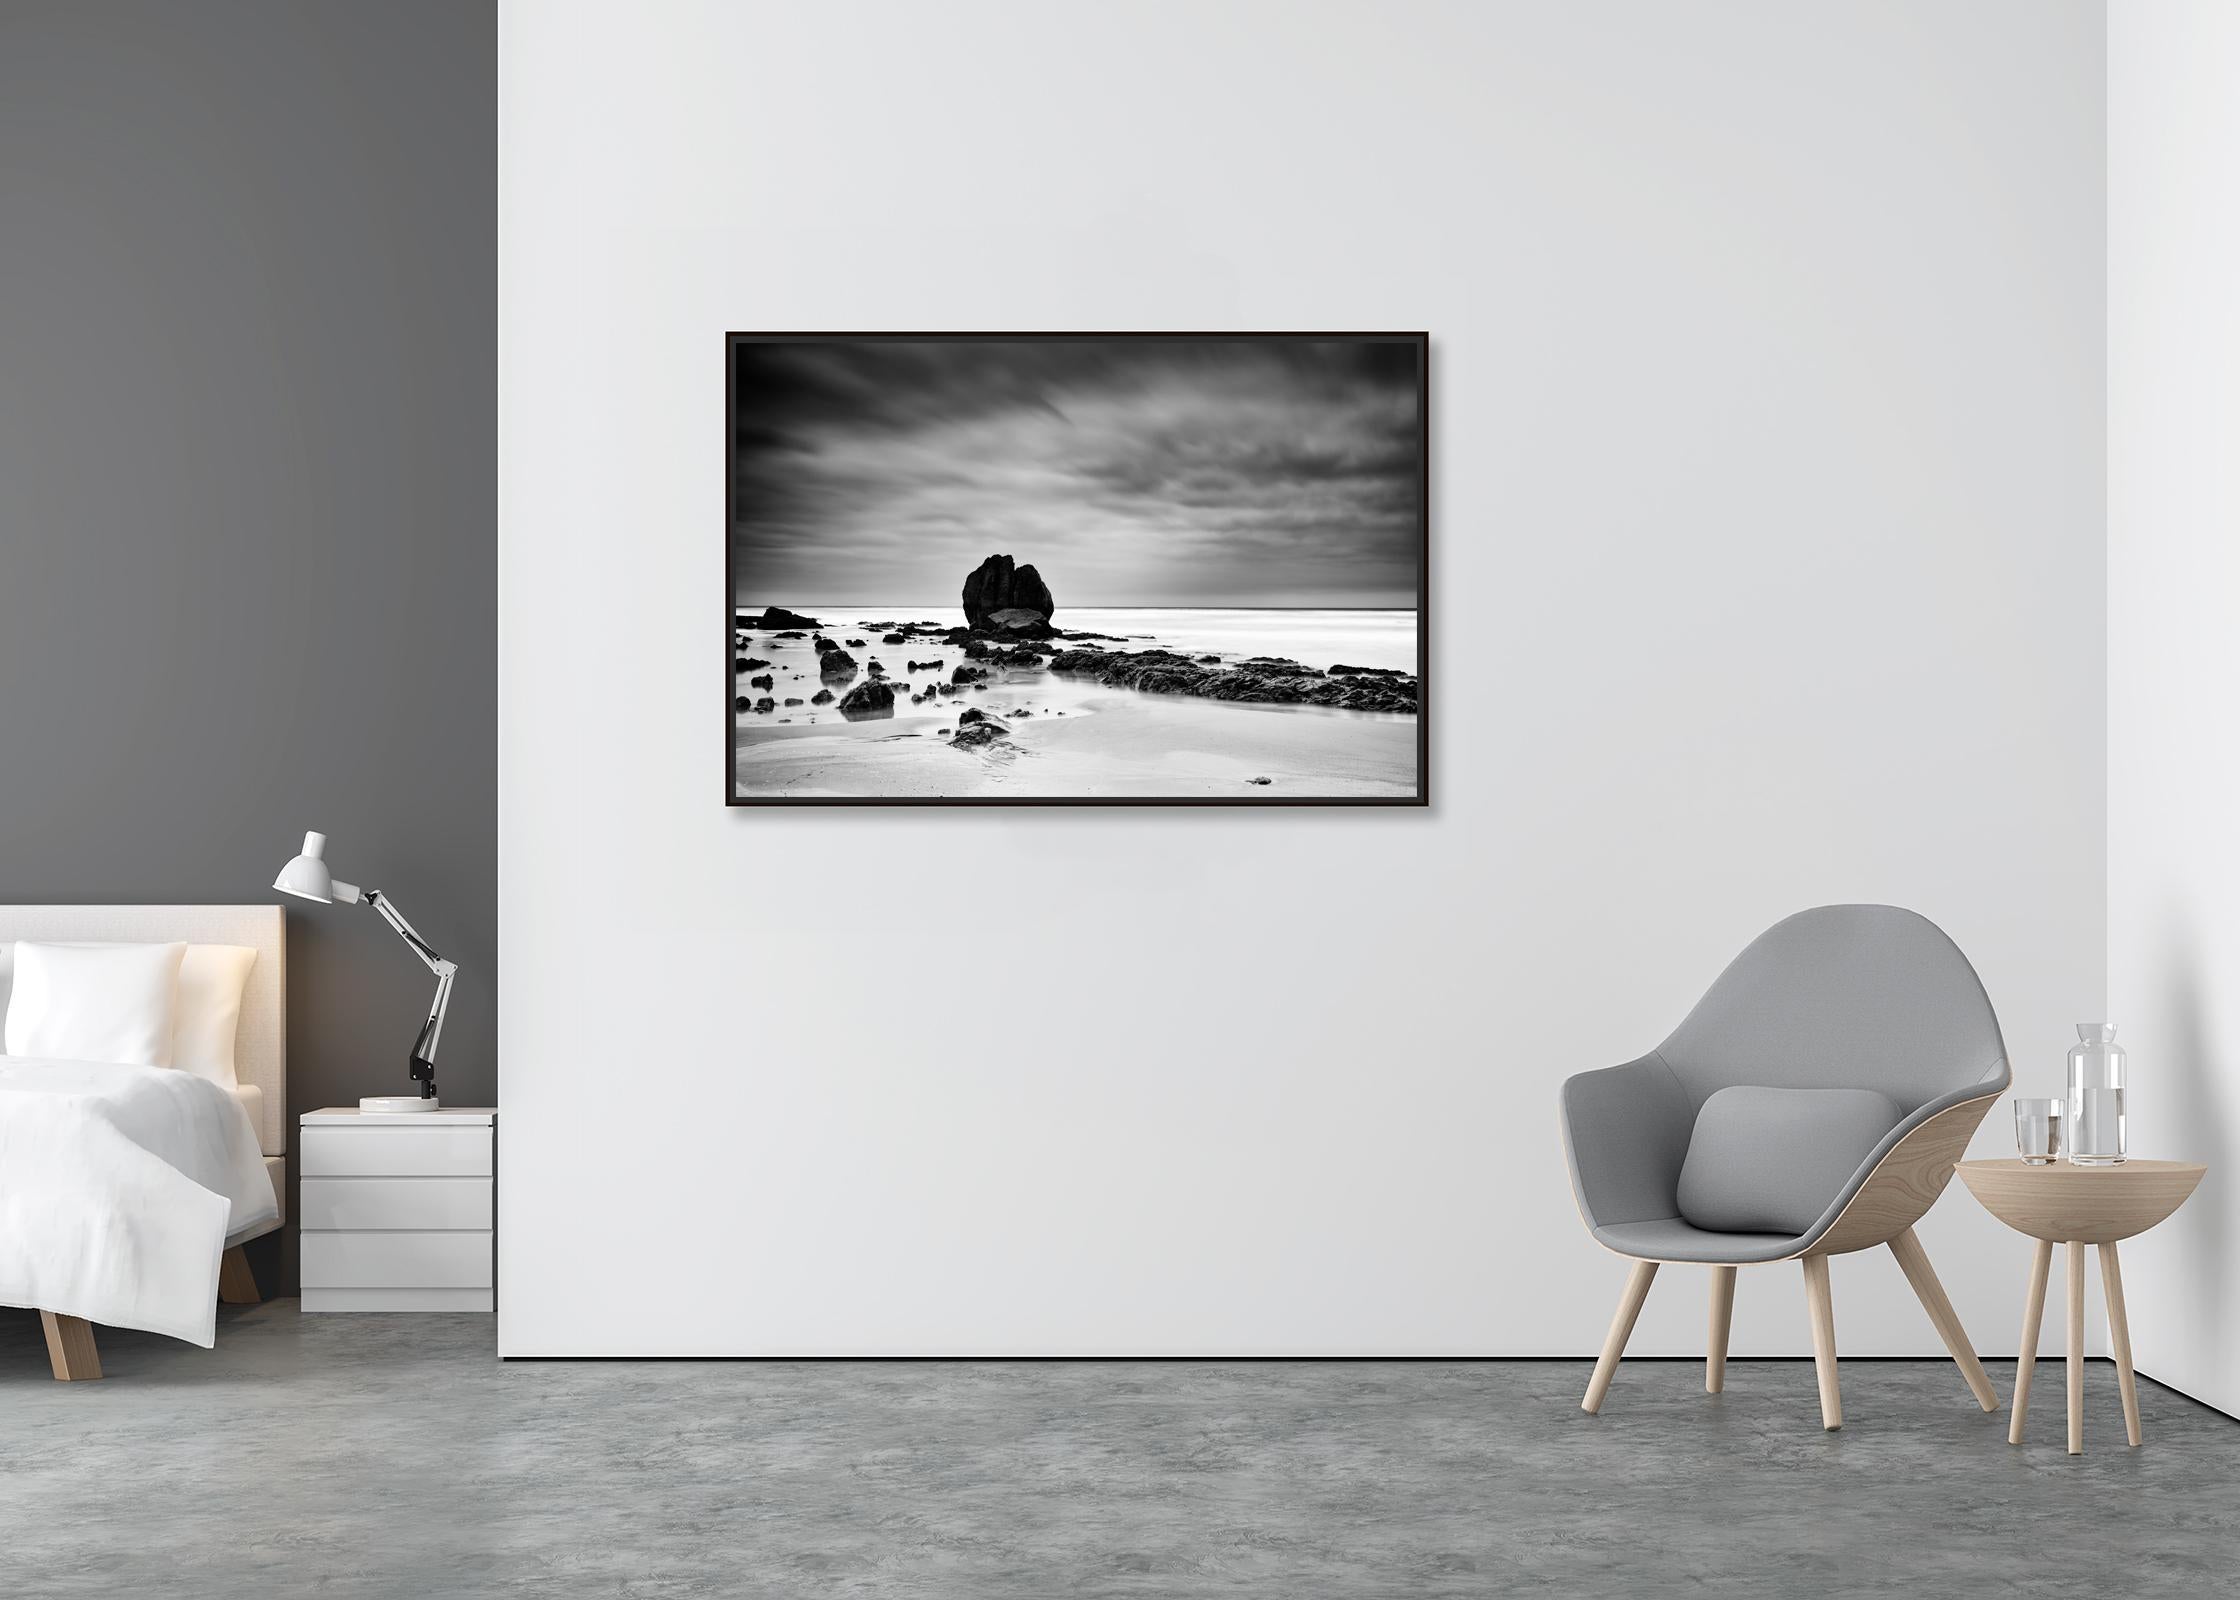 Rochers sur le SHORE, plage, Côte Atlantique, France, paysage en noir et blanc  - Contemporain Photograph par Gerald Berghammer